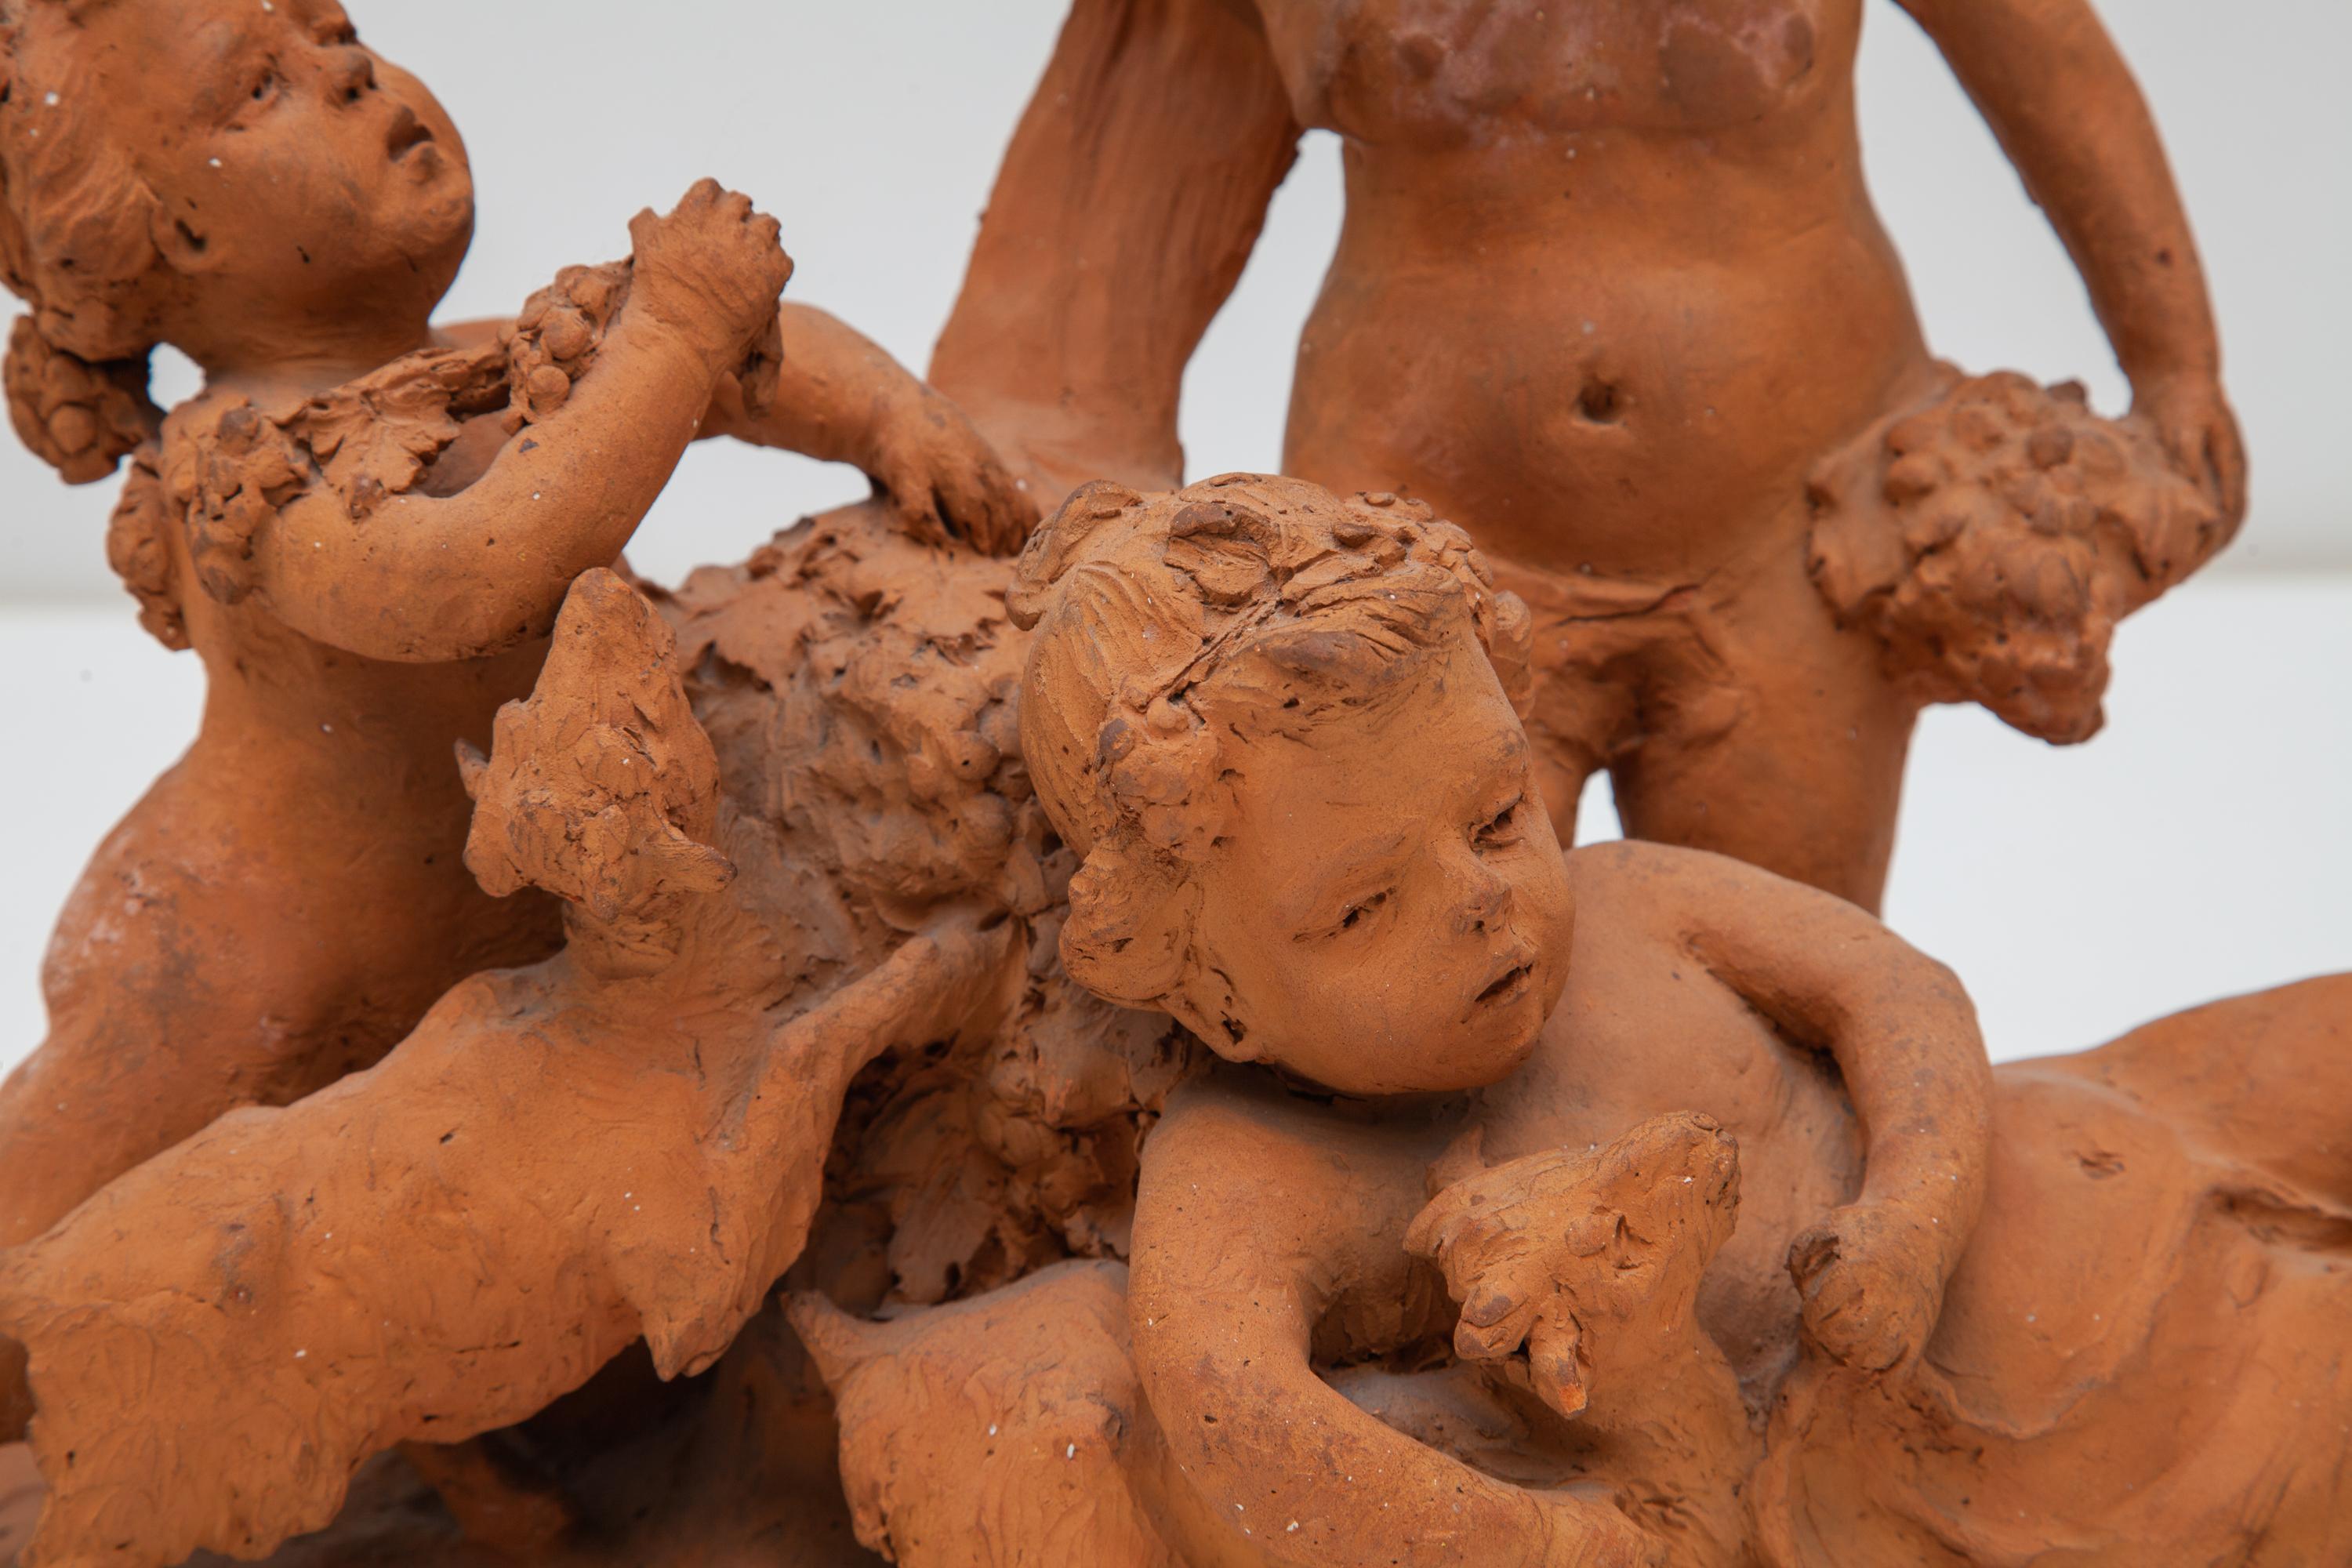 Magnifique détail et charmante sculpture en terre cuite non émaillée du 19e siècle. Elle représente trois enfants chérubins munis de lampes et de fruits, jouant avec deux chèvres au pied d'un arbre.
Signature 